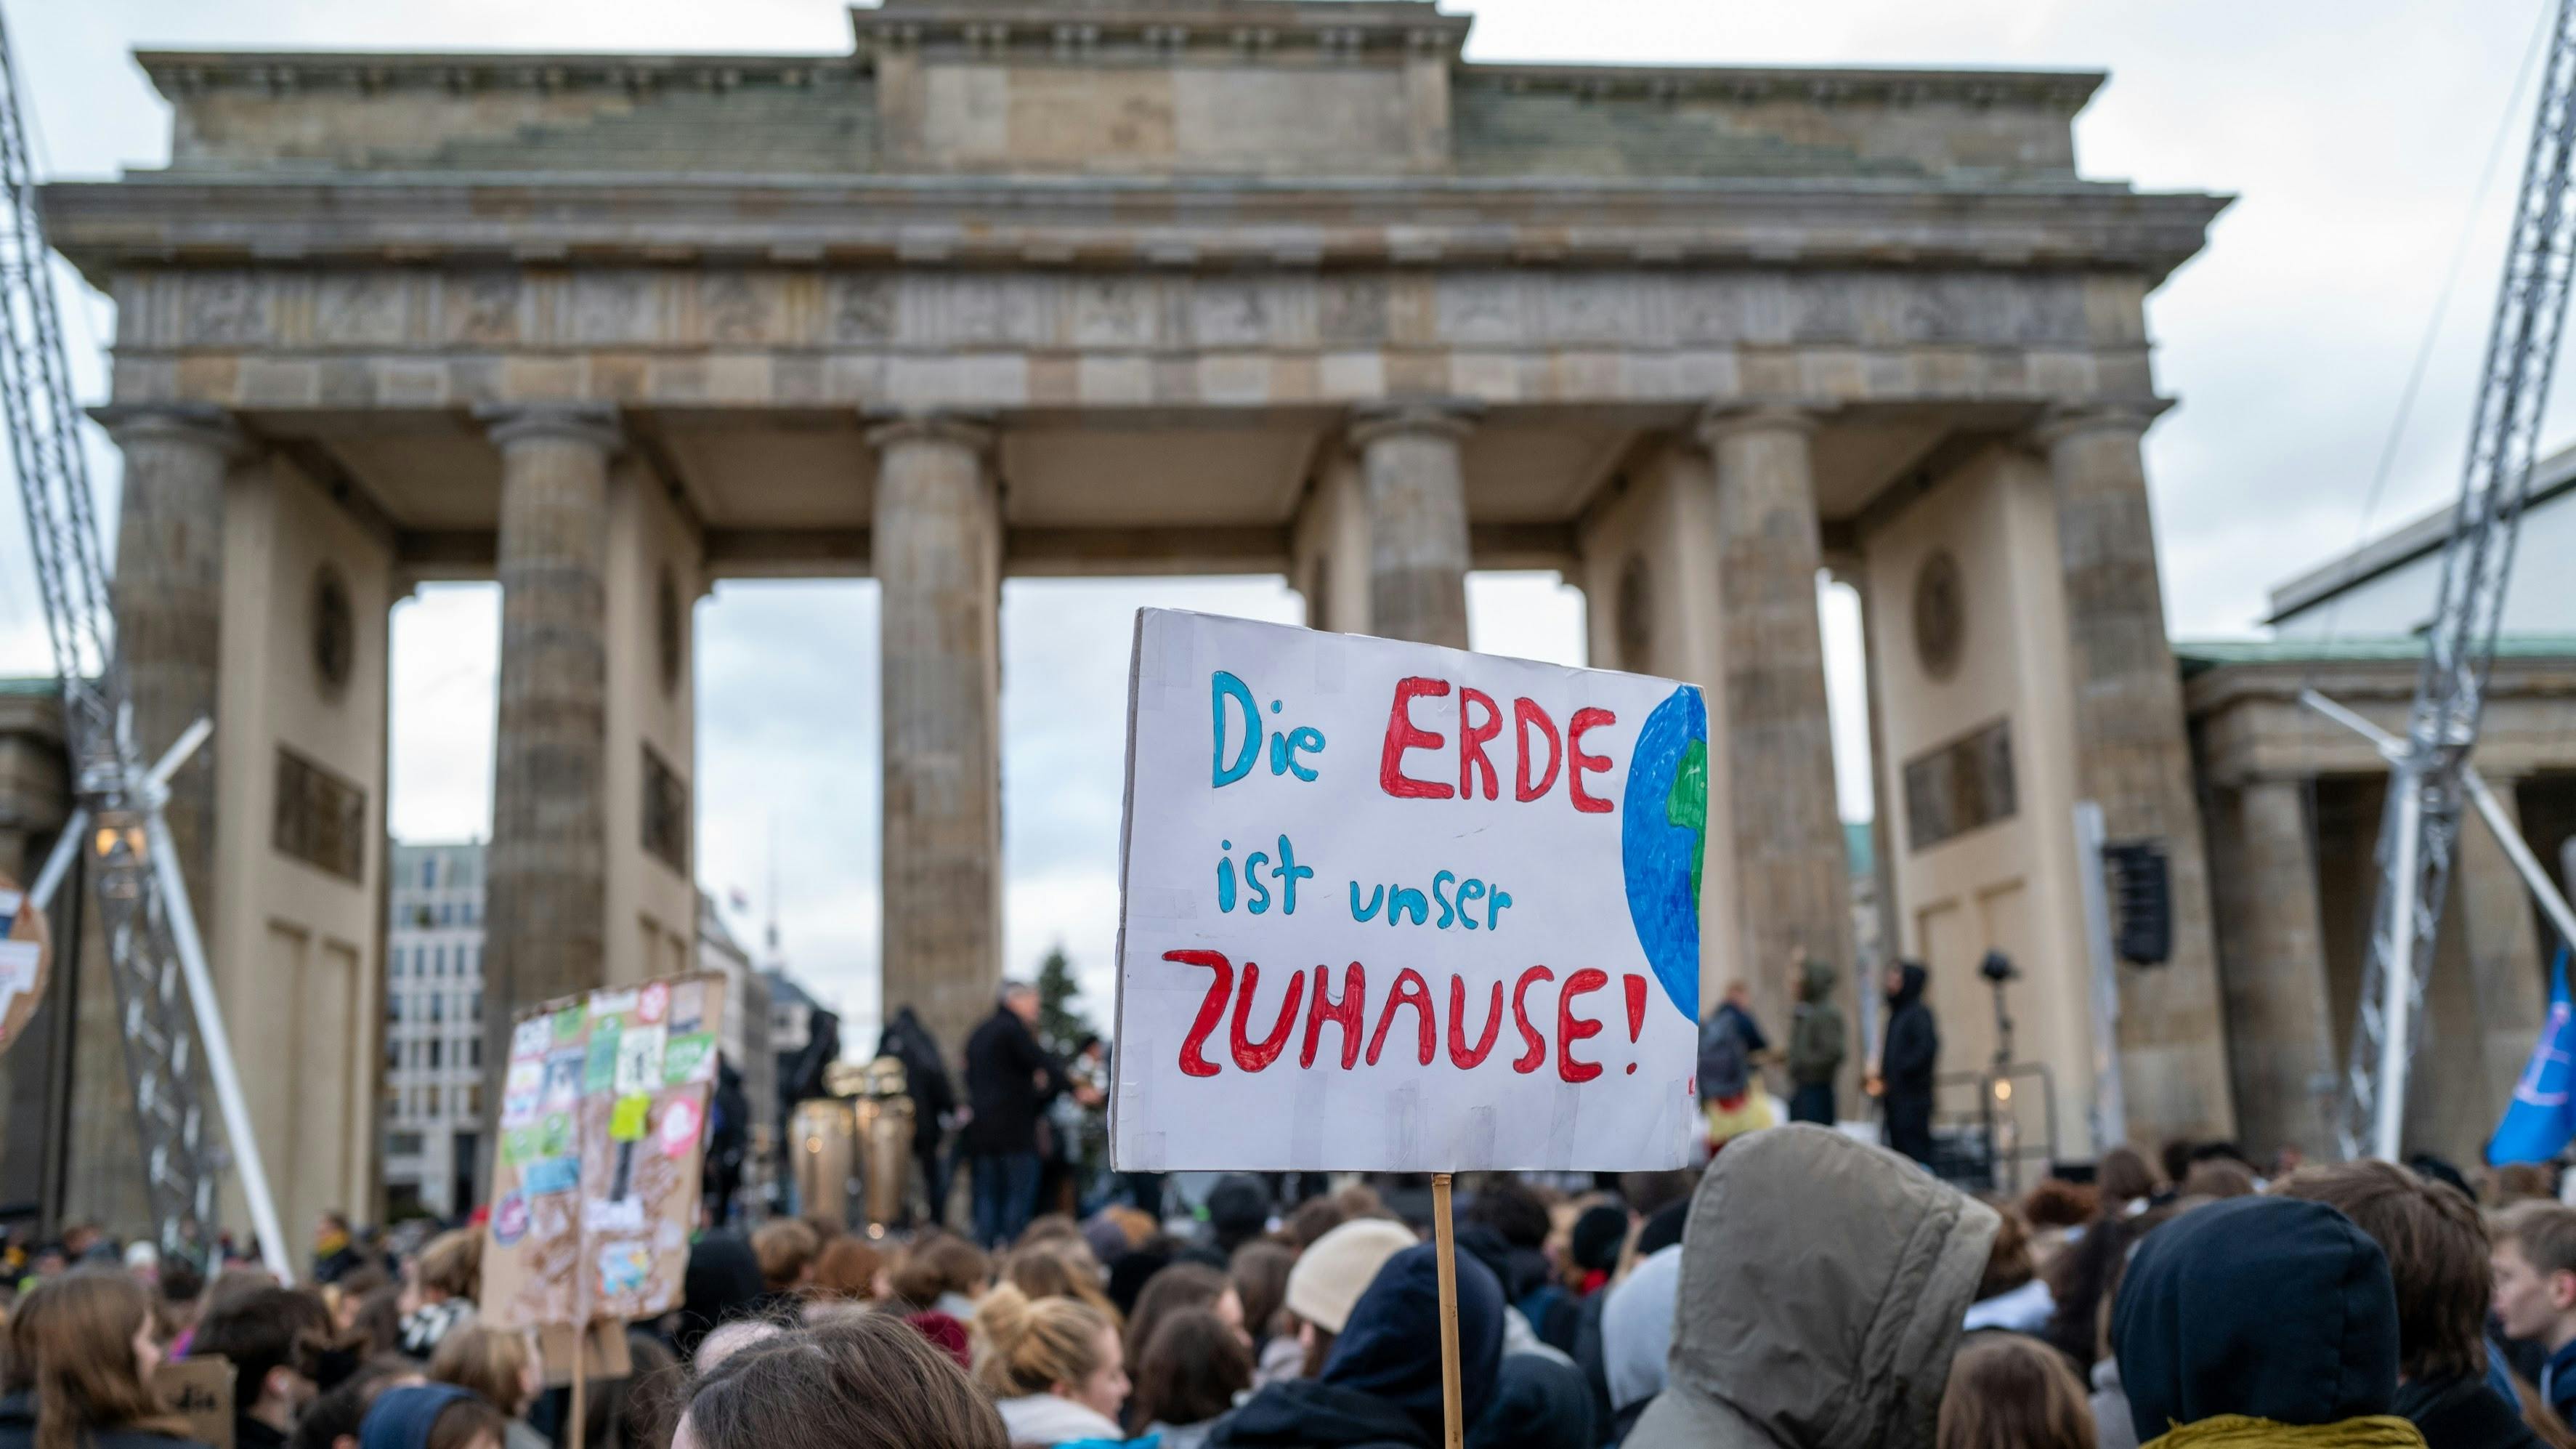 Eine Demo vor dem Brandenburger Tor, man sieht die Köpfe der Demonstrant*innen und ein Schild: "Die Erde ist unser ZUHAUSE!"